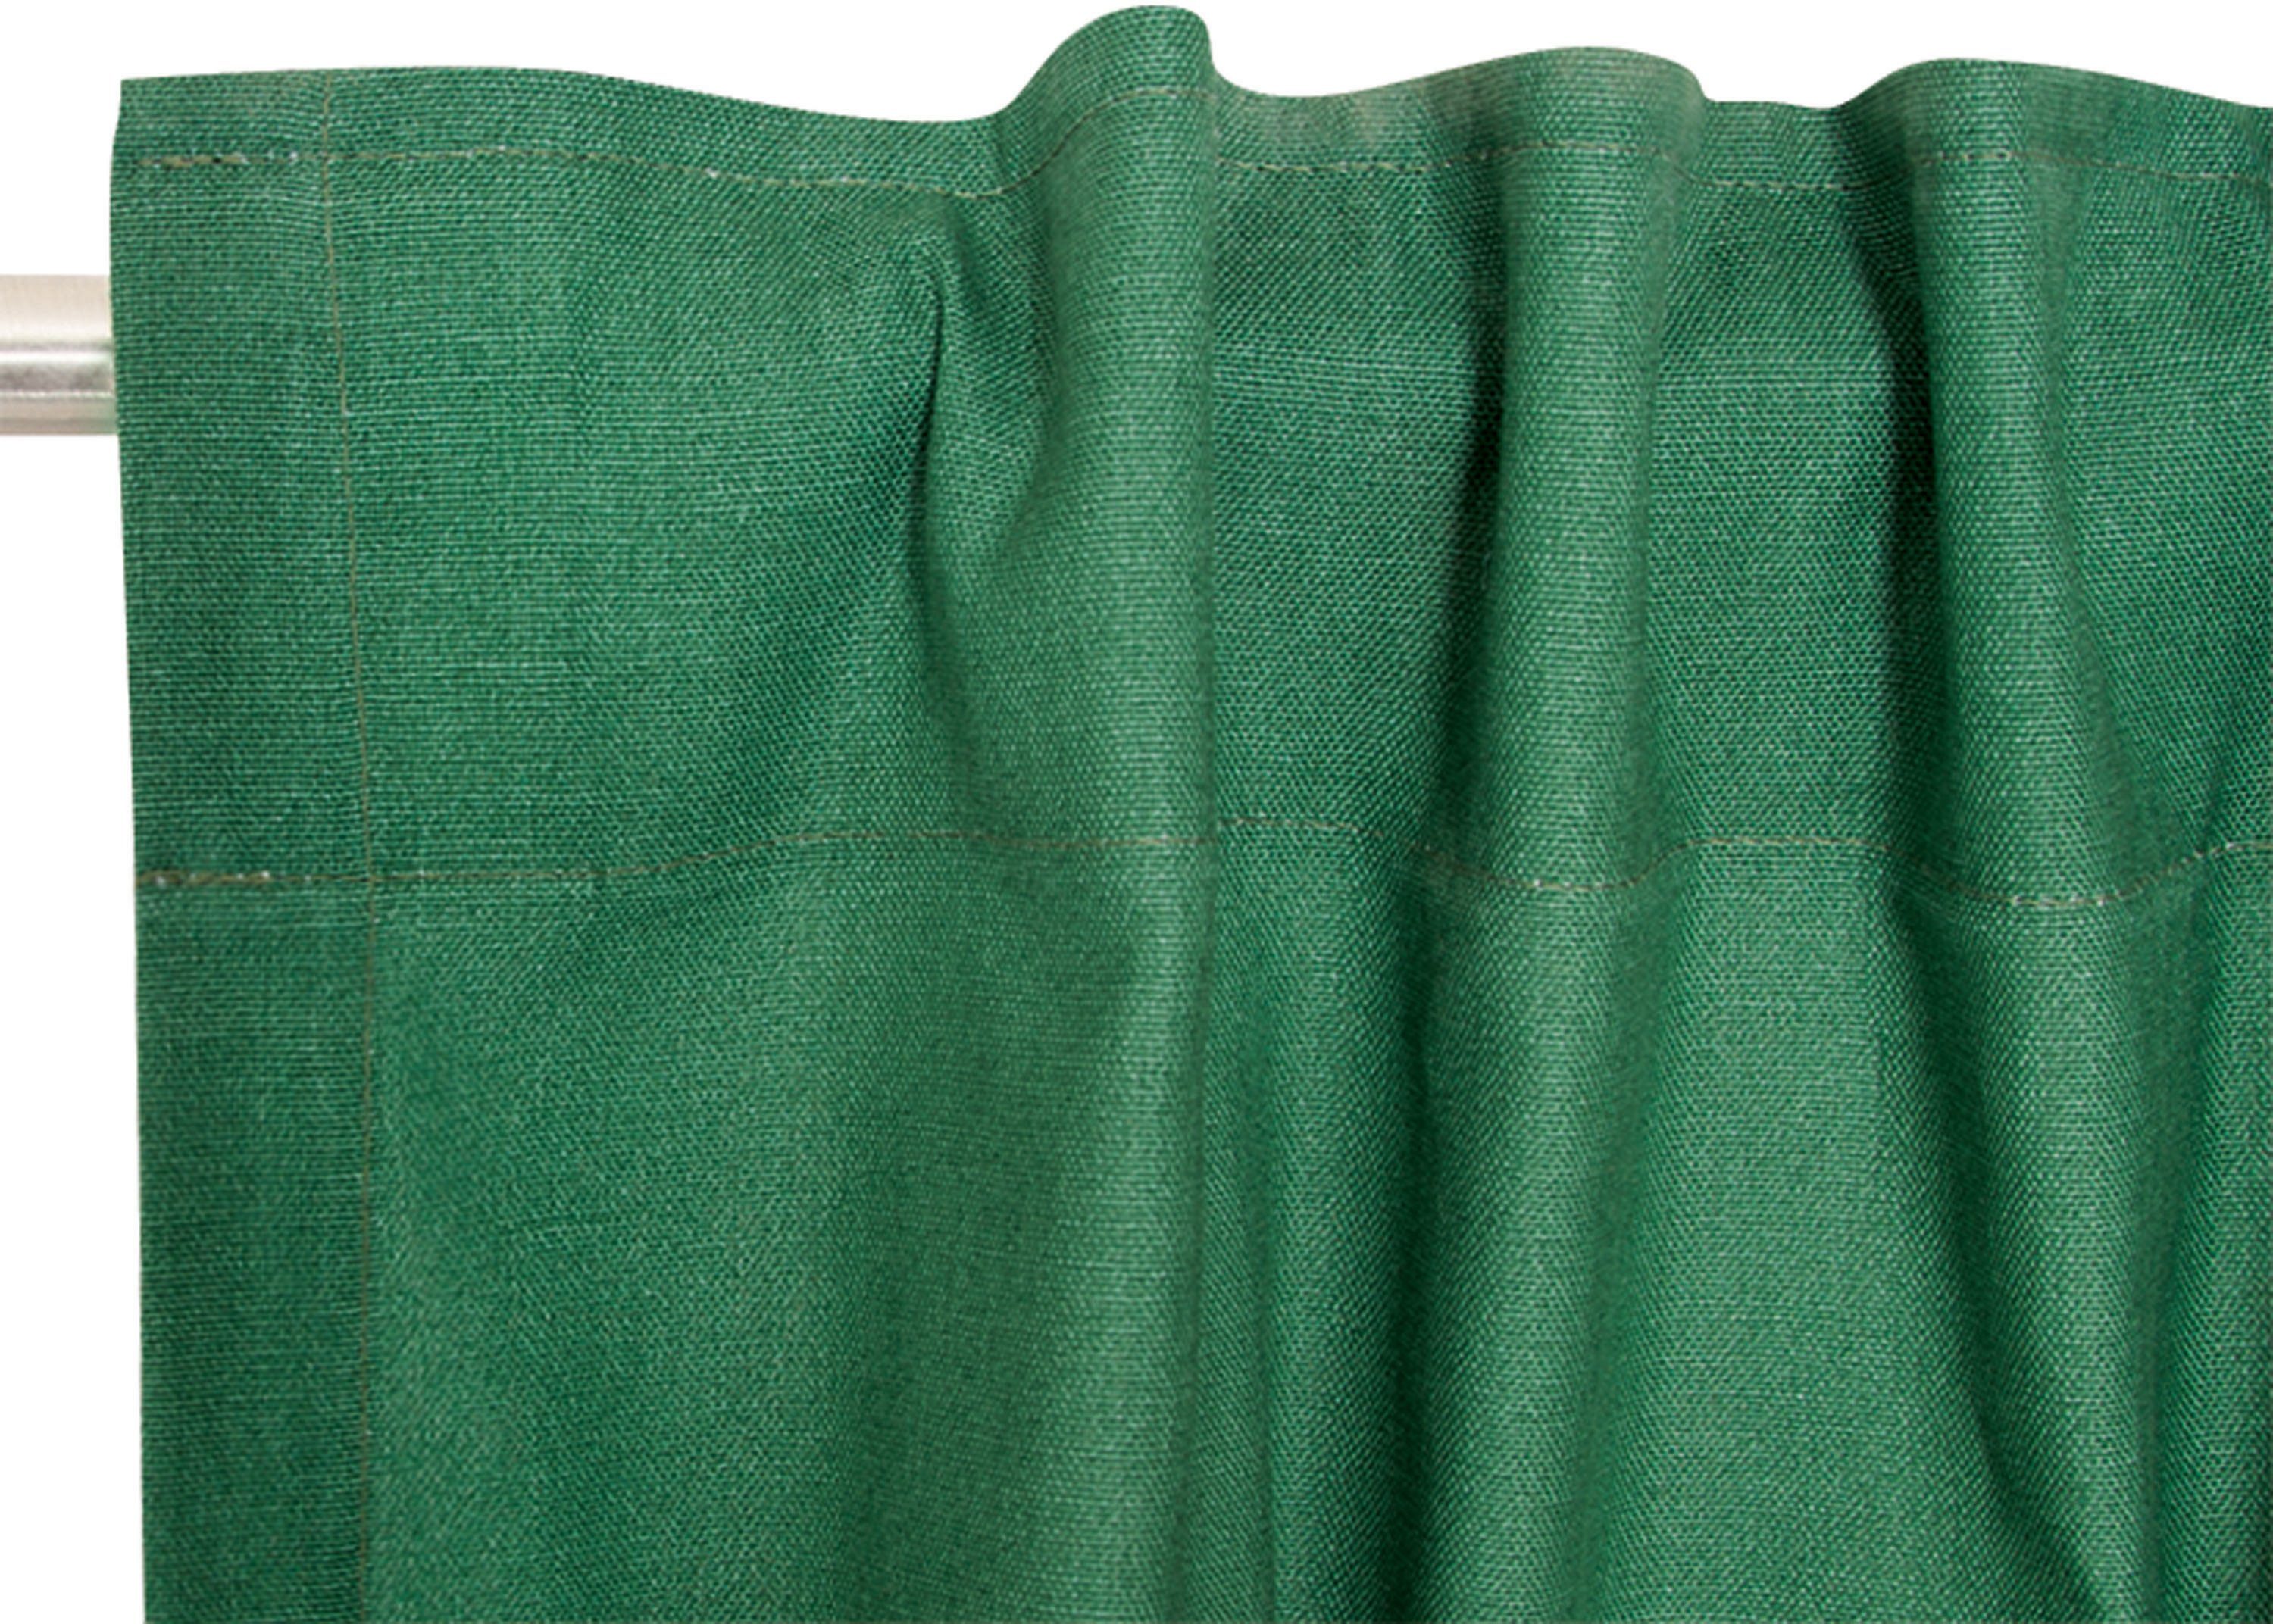 Vorhang Neo, Esprit, (1 Schlaufen blickdicht, Baumwolle, blickdicht aus nachhaltiger verdeckte St), grün/green/dunkelgrün